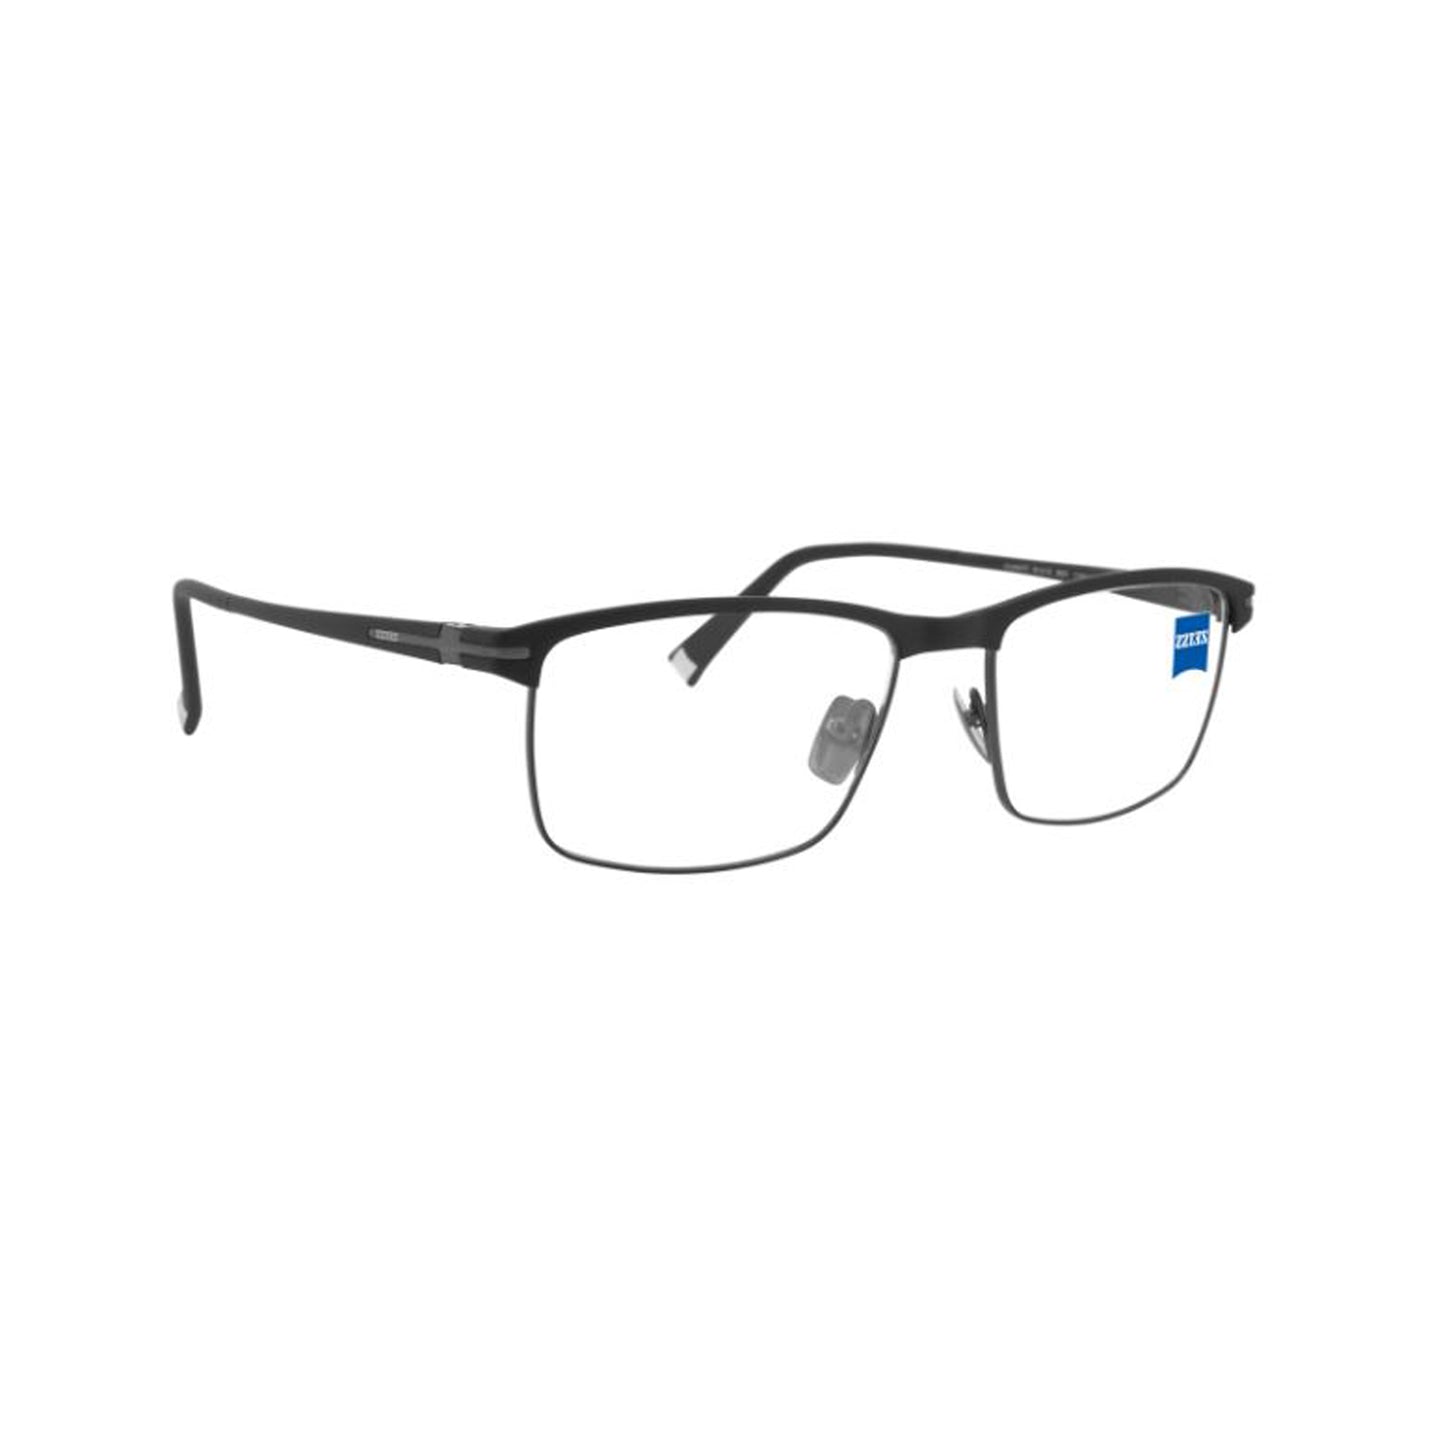 Zeiss Eyewear Black Rectangle Metal Full Rim Eyeglasses. Made in Germany ZS40011-Y17